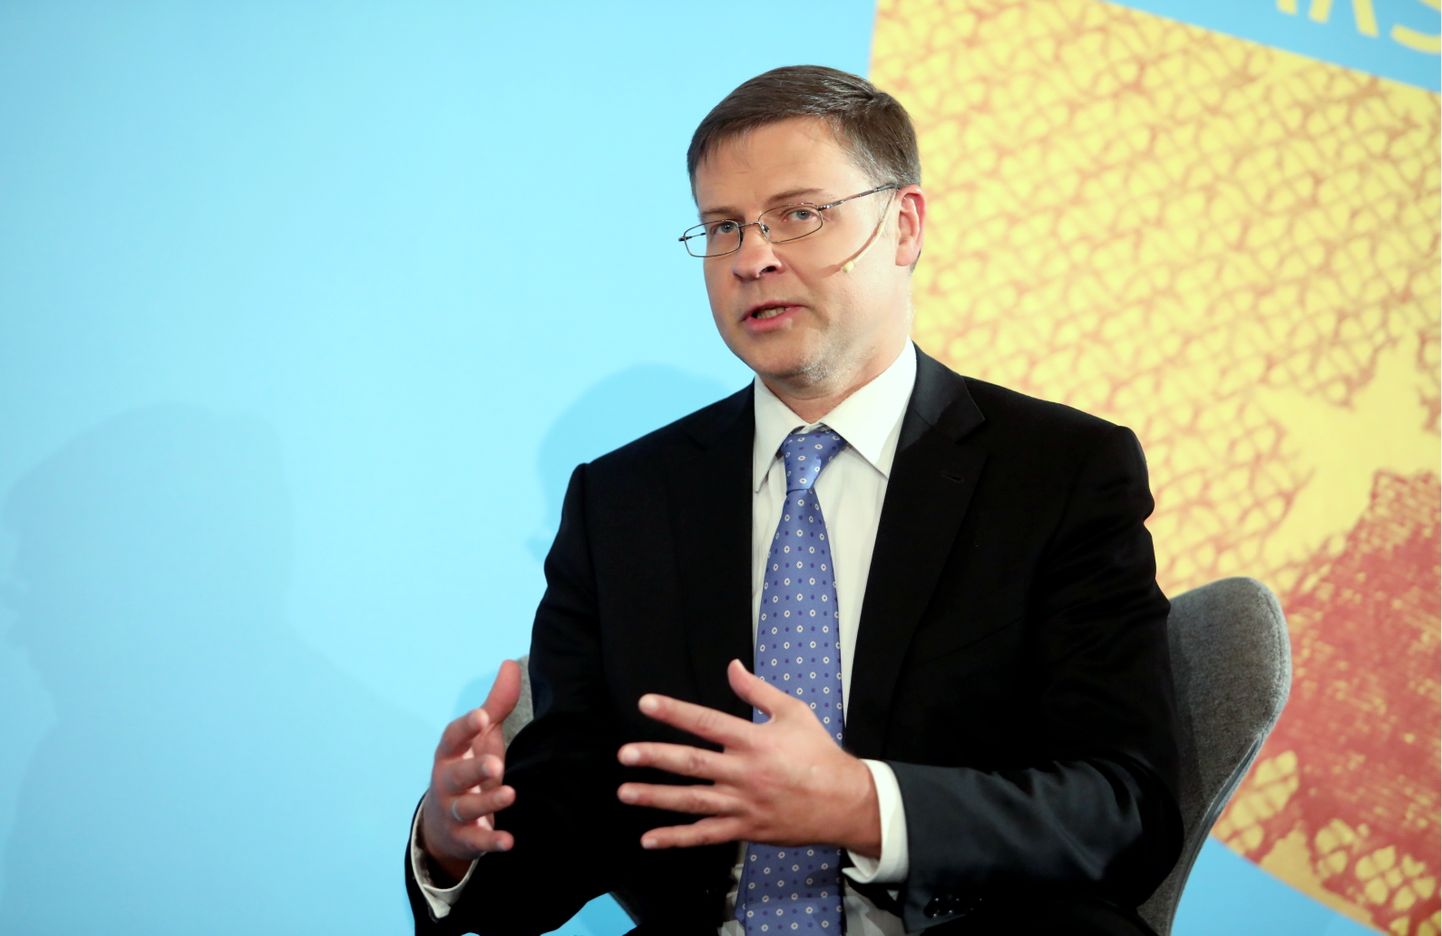 Eiropas Komisijas priekšsēdētāja vietnieks Valdis Dombrovskis piedalās paneļdiskusijā "Eirozonas dalībvalstu izaicinājumi" augsta līmeņa konferencē "Eiro 5 gadi Latvijā".